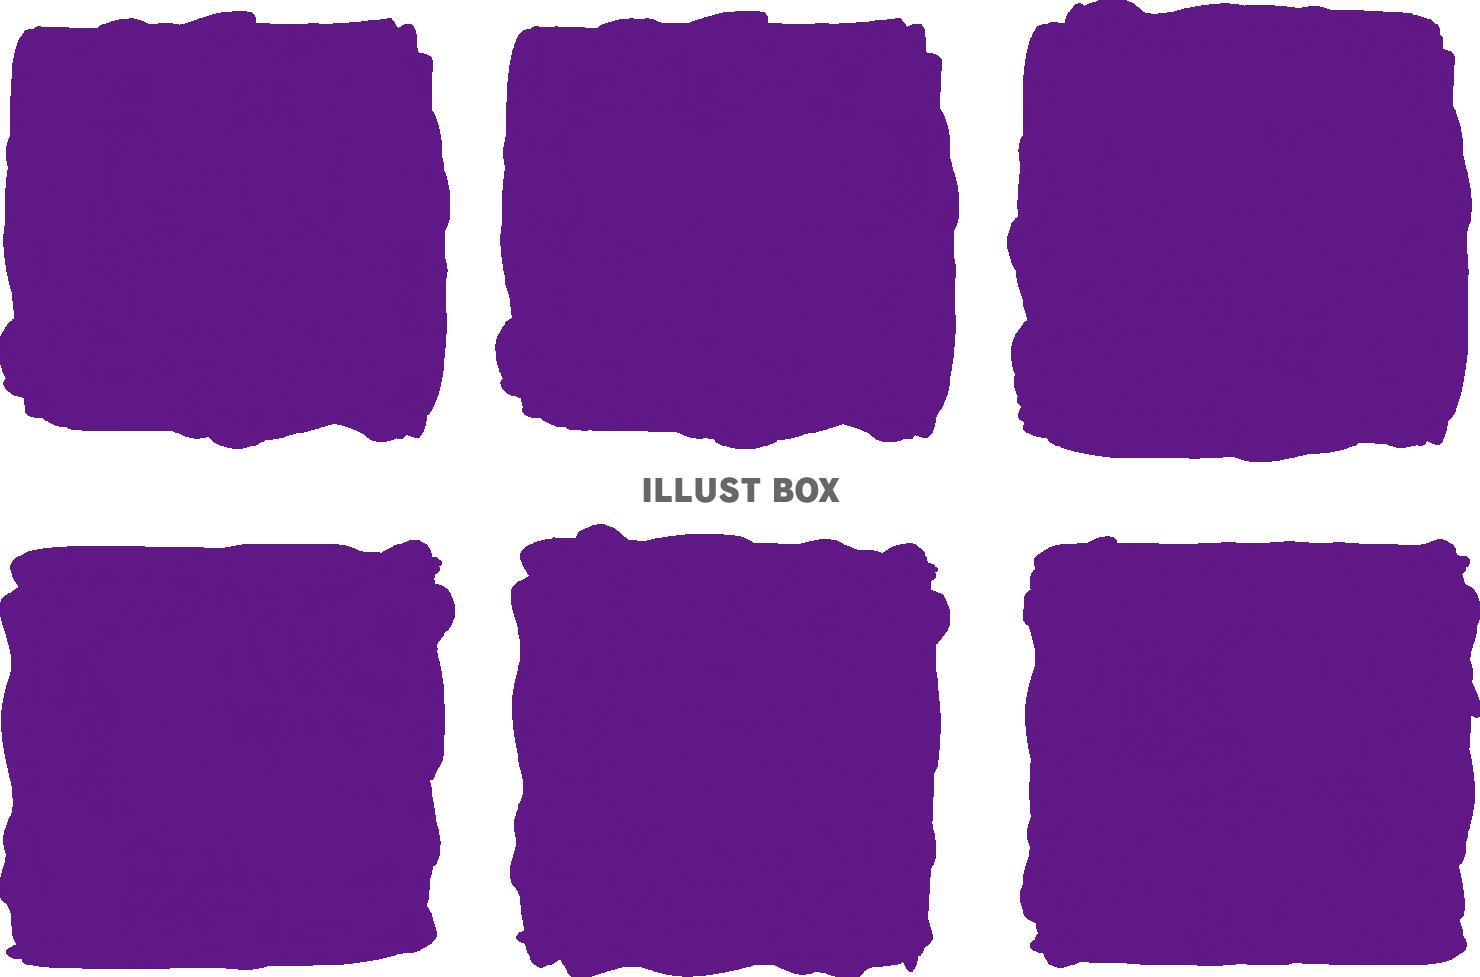 ディズニー画像ランド ユニークおしゃれ 紫 かわいい 壁紙